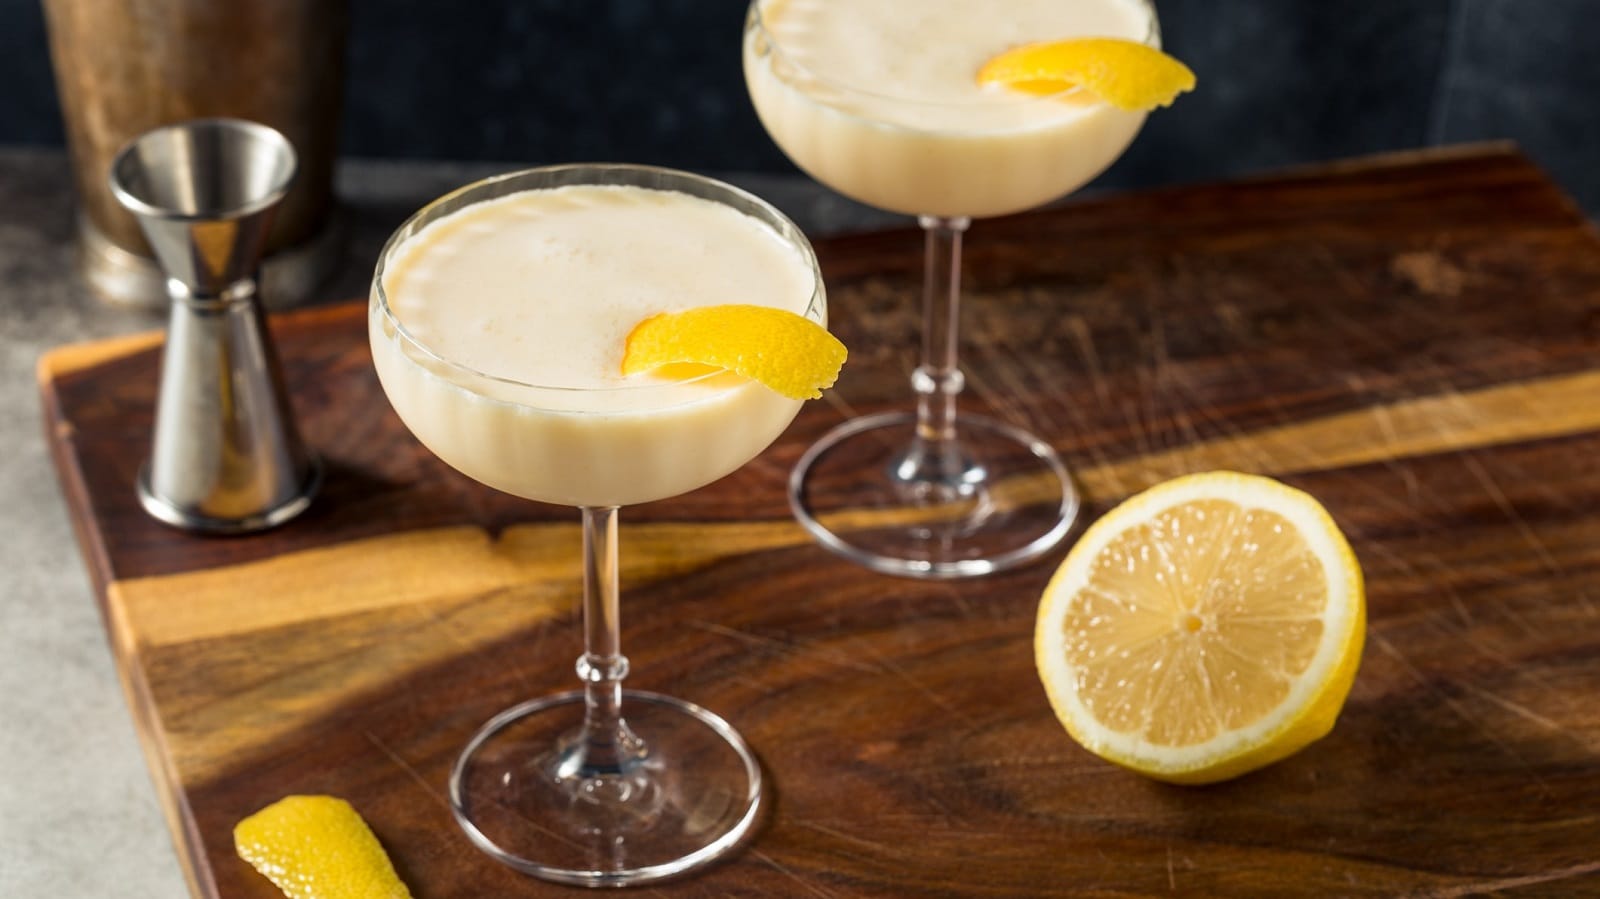 Zwei Martini-Gläser mit Canary Flip auf einem Holzbrett.